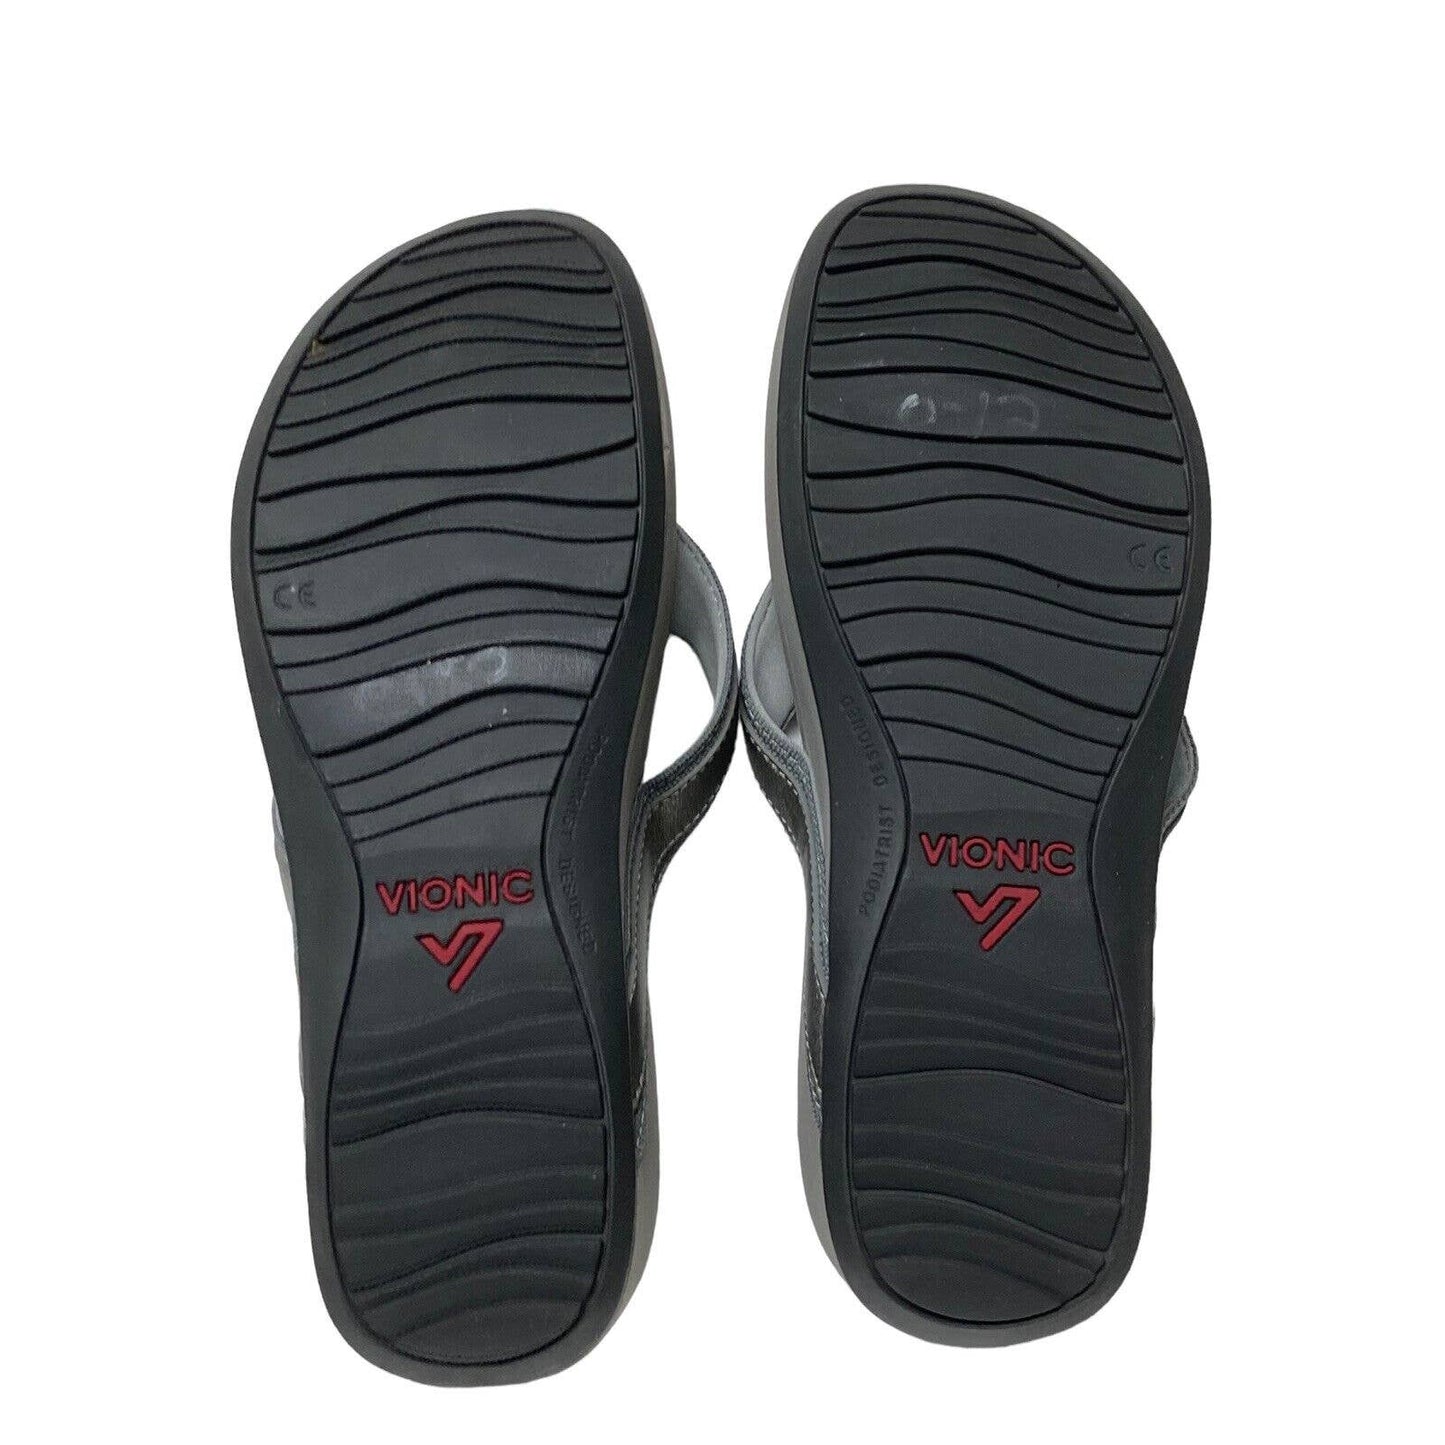 Vionic High Tide Platform Sandals Grey Size 9 TVW4895